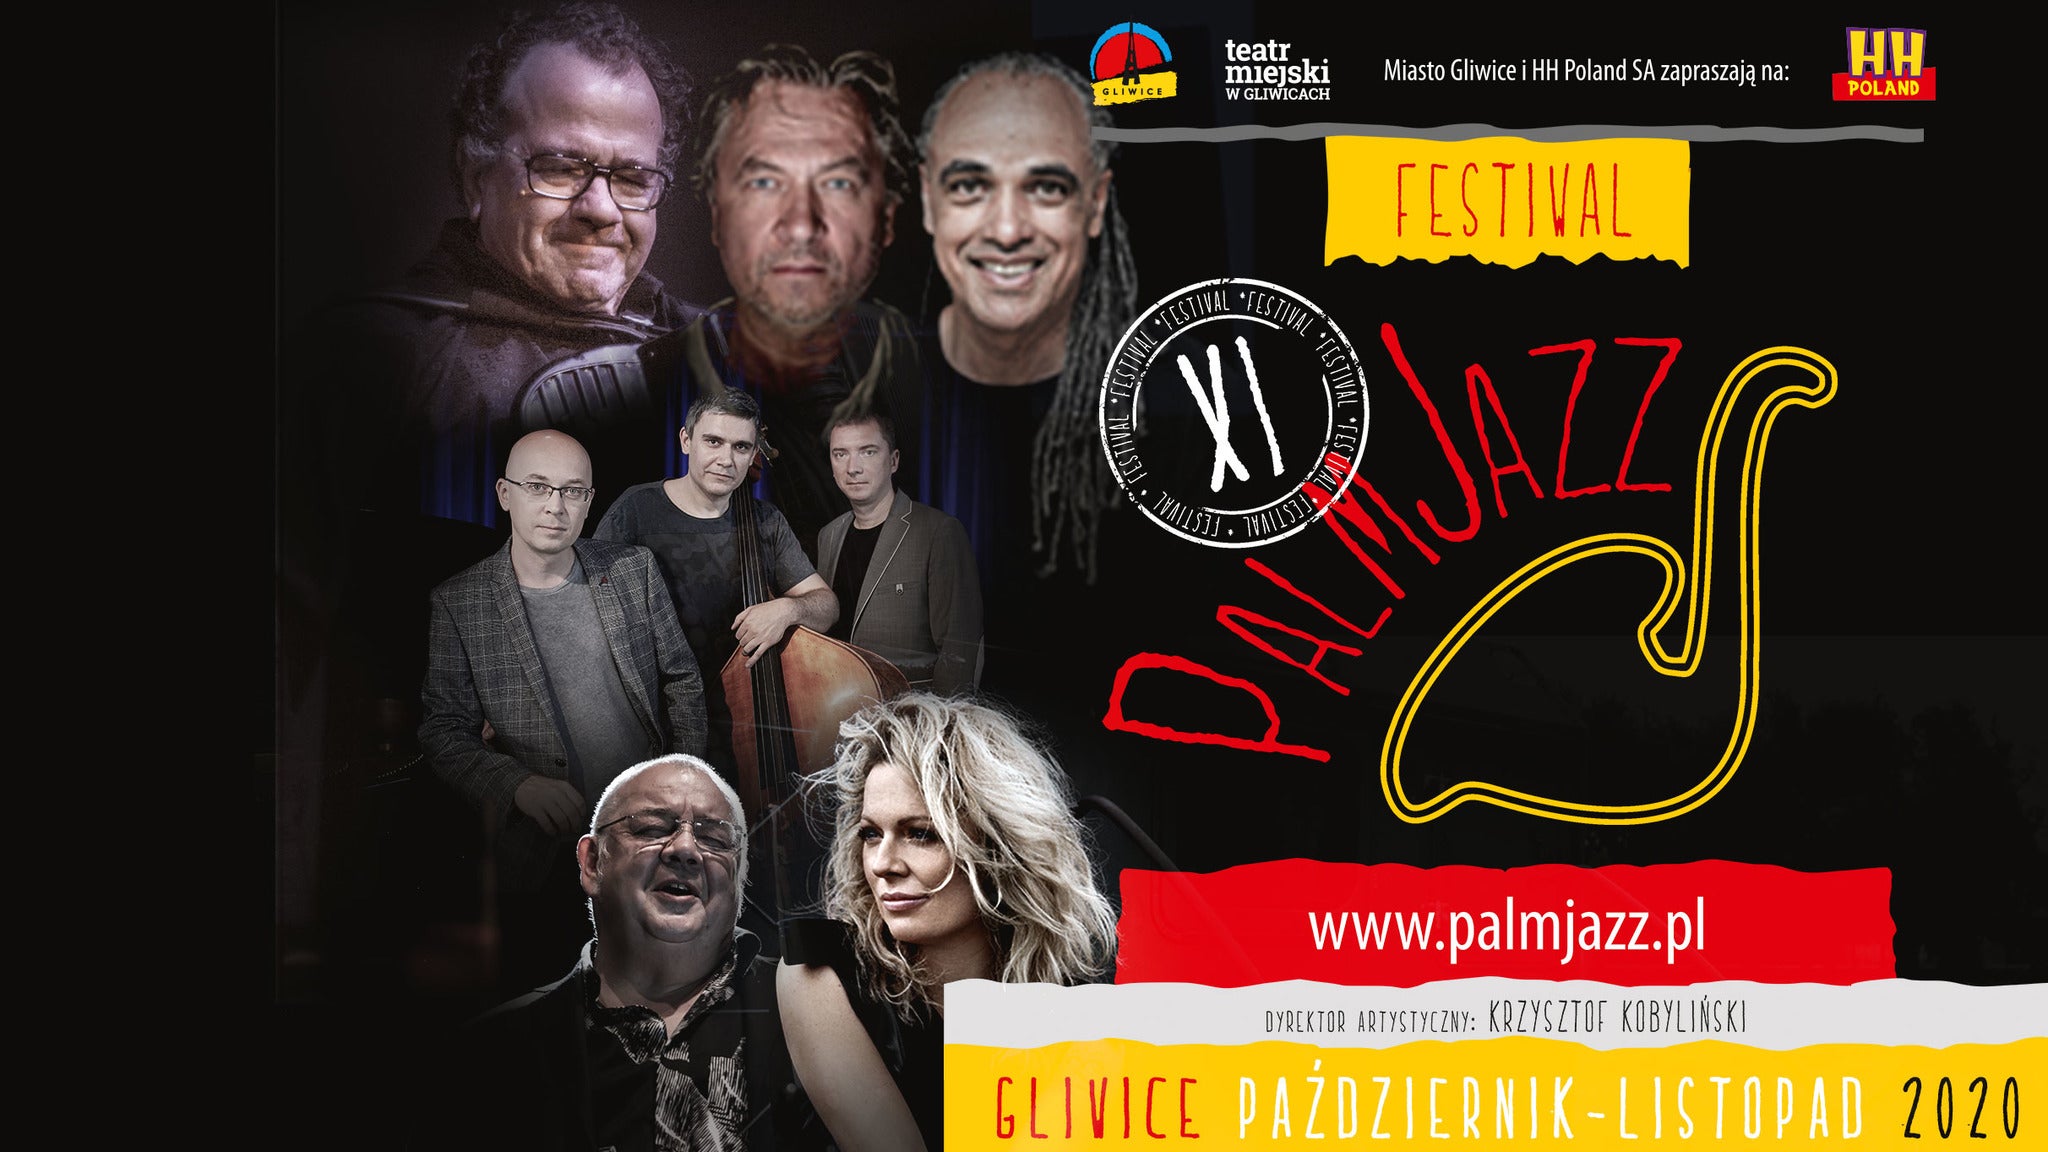 PalmJazz Festival 2020 - JAZZ FORUM Talents